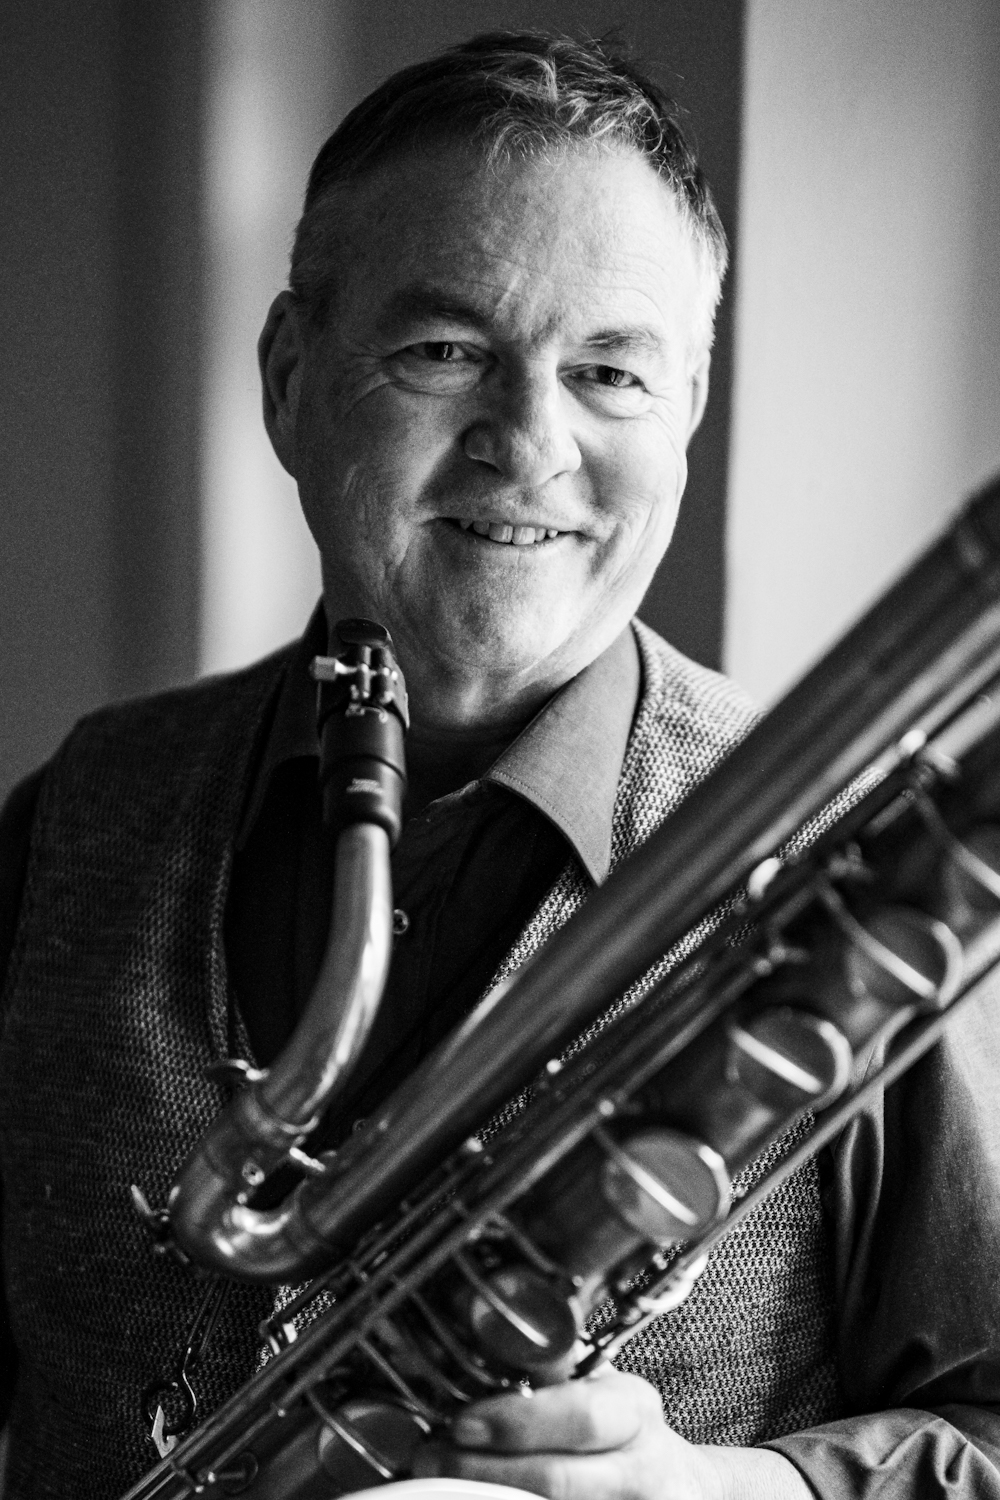 Peter Zulauf am Bass-Saxophon